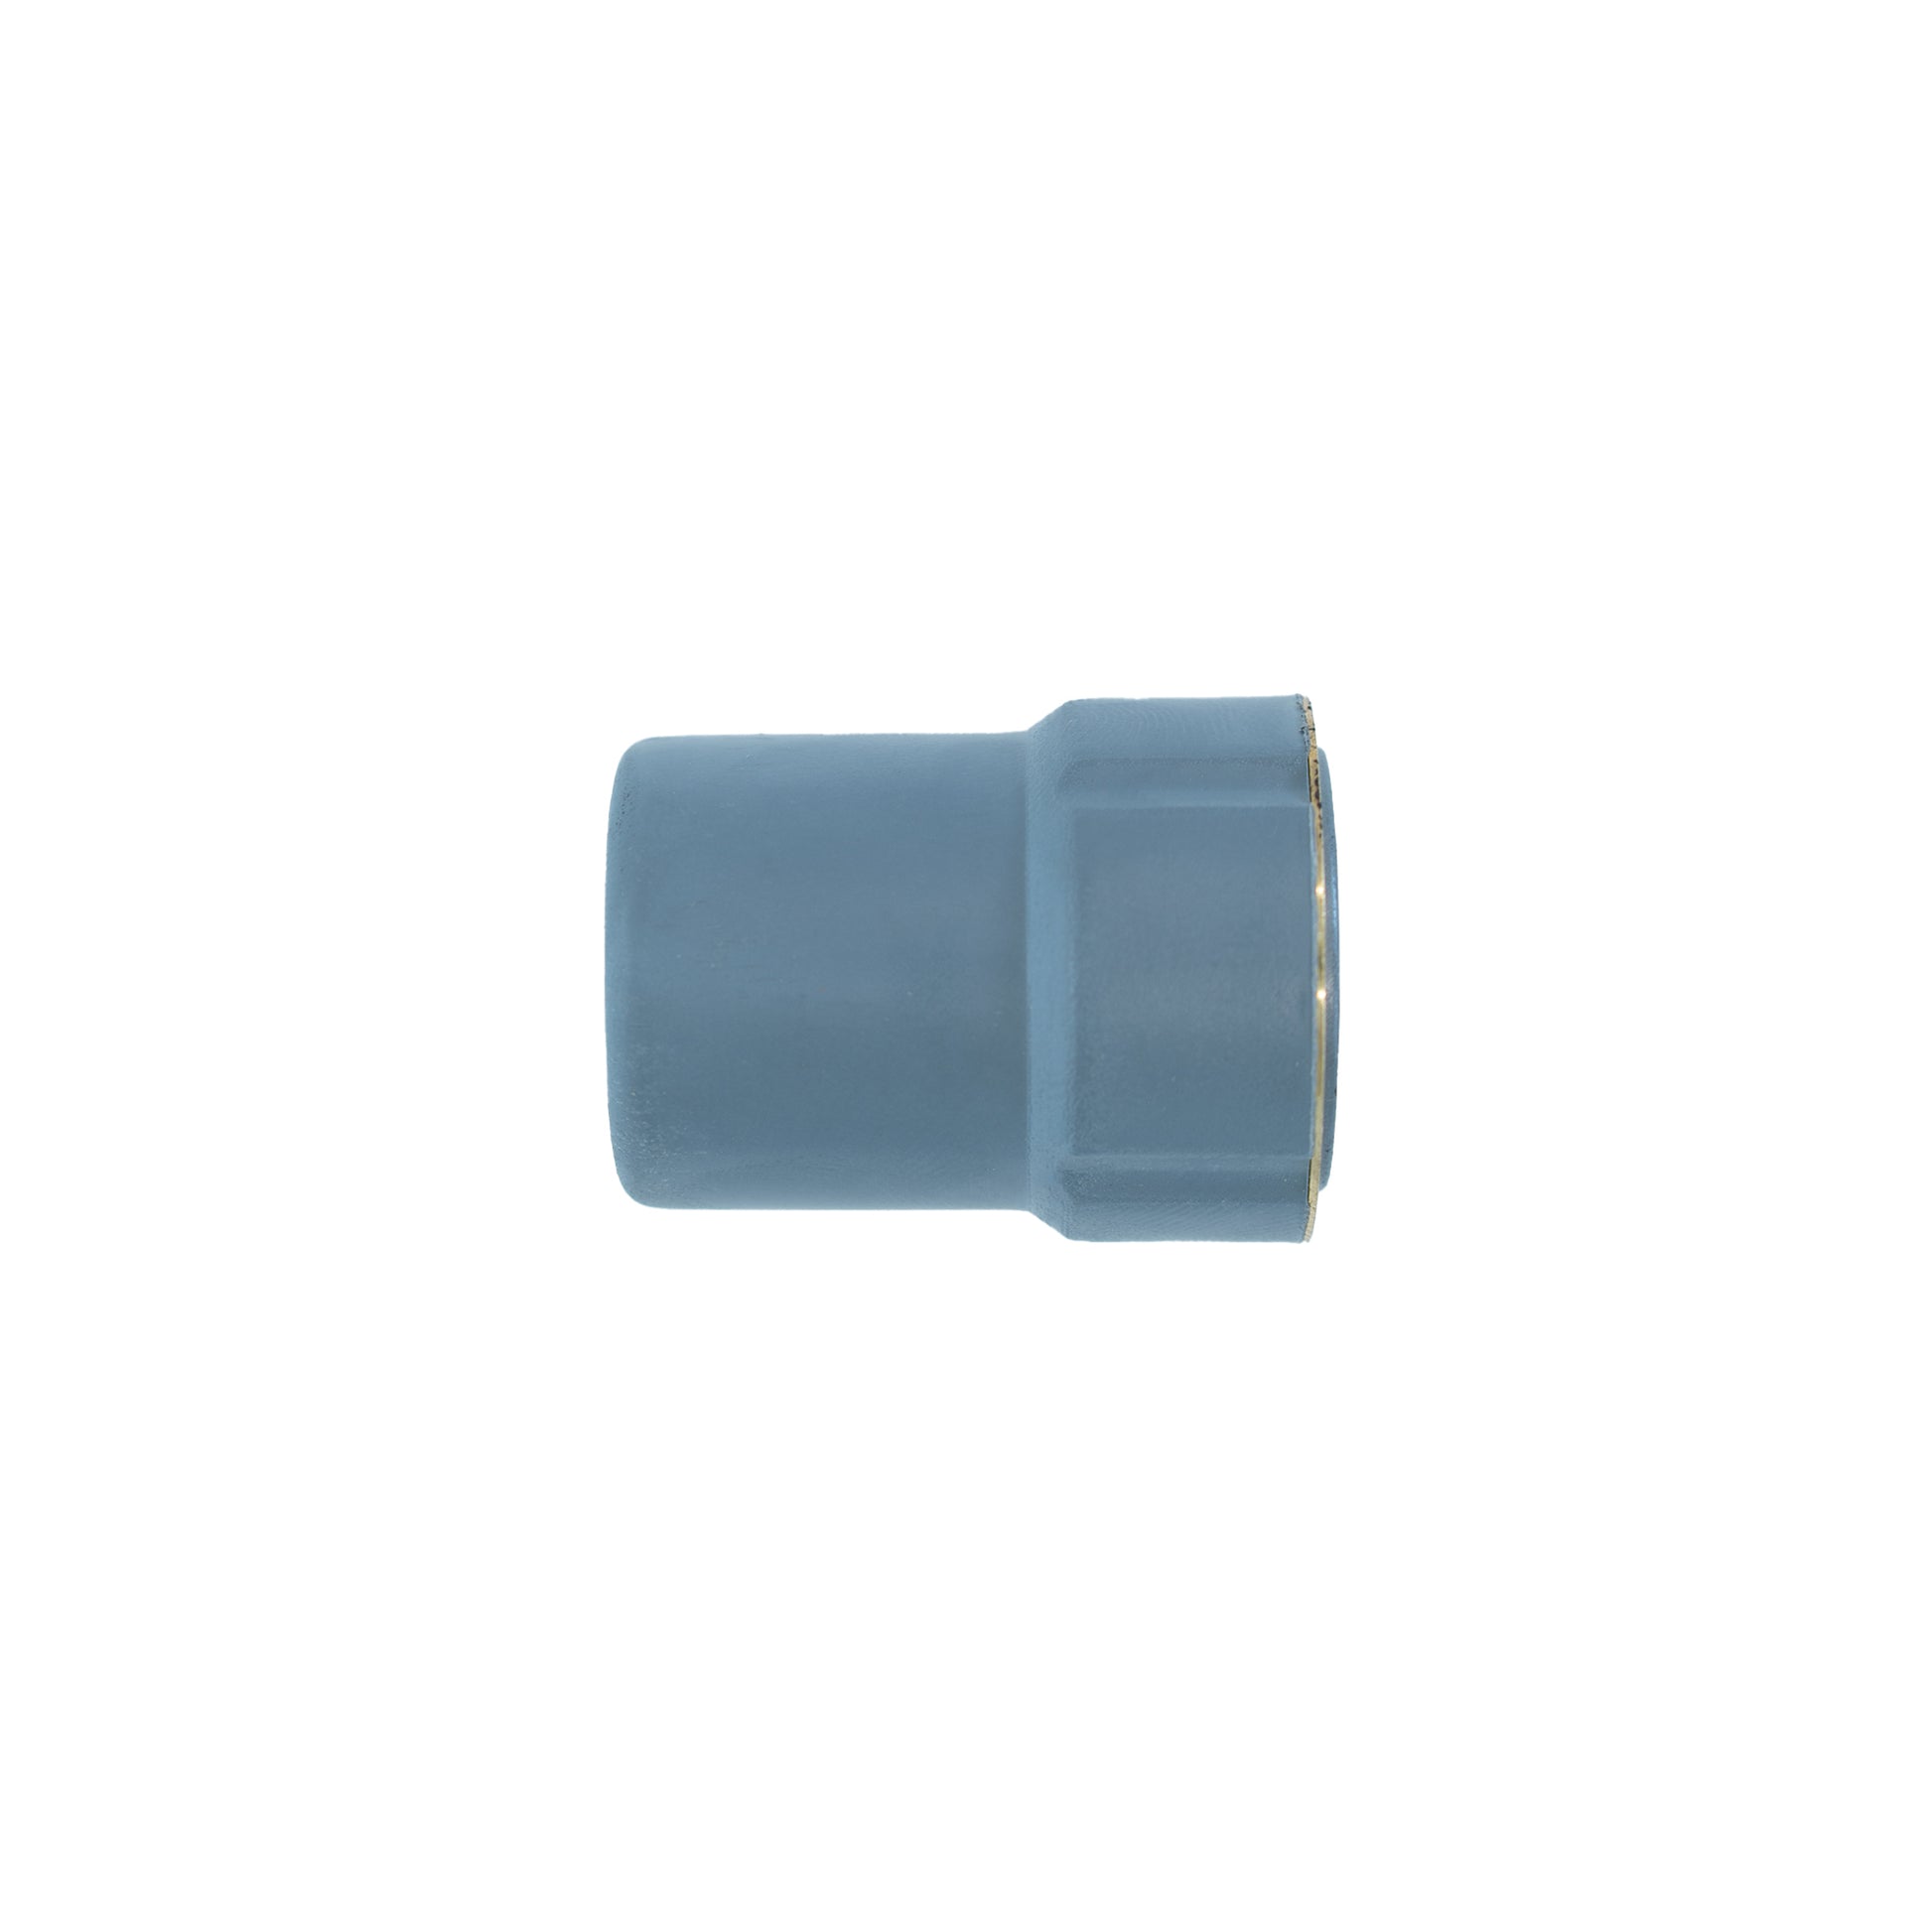 SWP Cebora Prof 35HF & Prof 50 Compatible Nozzle Retaining Cap